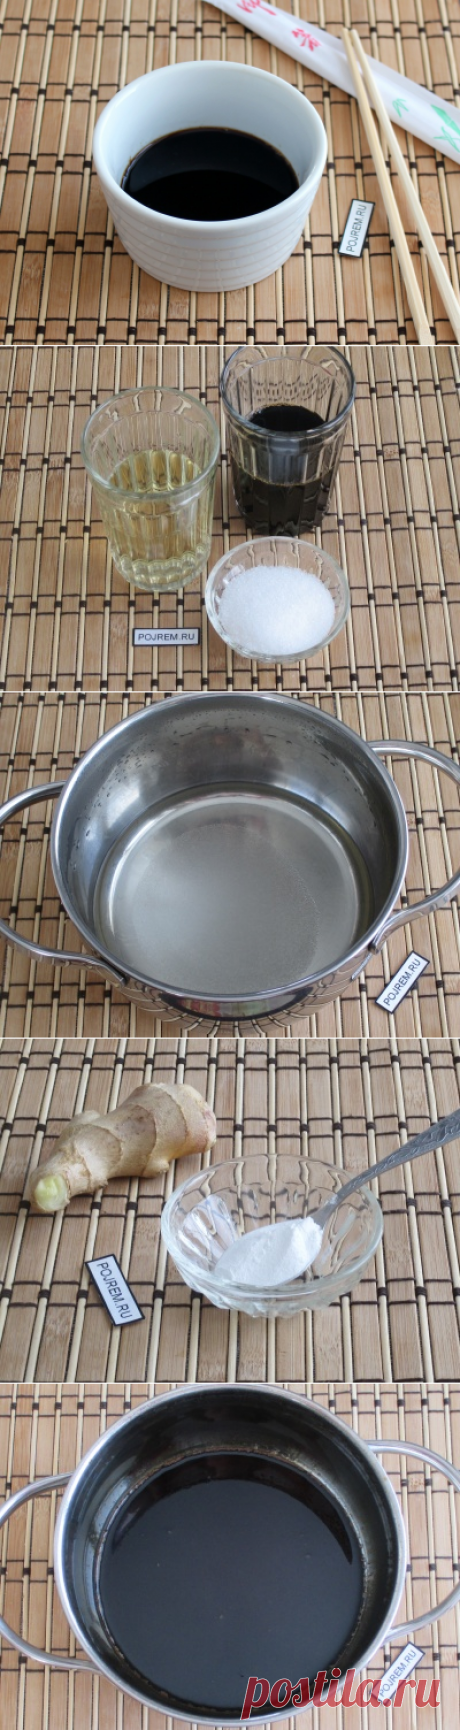 Соус унаги - пошаговый рецепт с фото: как приготовить